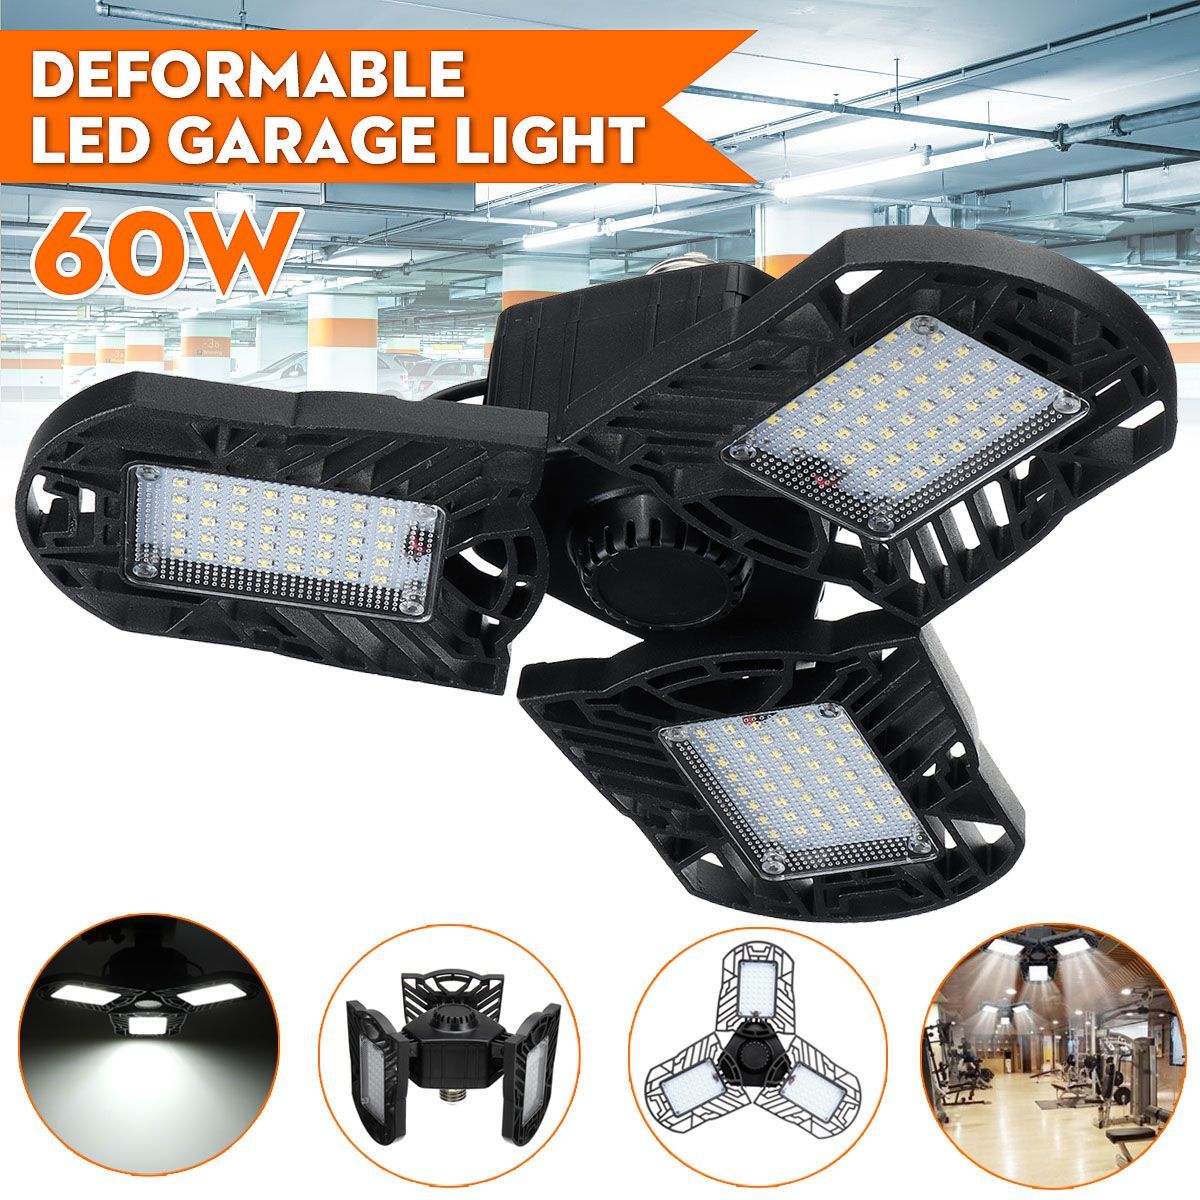 60W120W-85-265V-34-Deformable-LED-Garage-Lights-Workshop-Ceiling-Lamp-E26-E27-Base-1735754